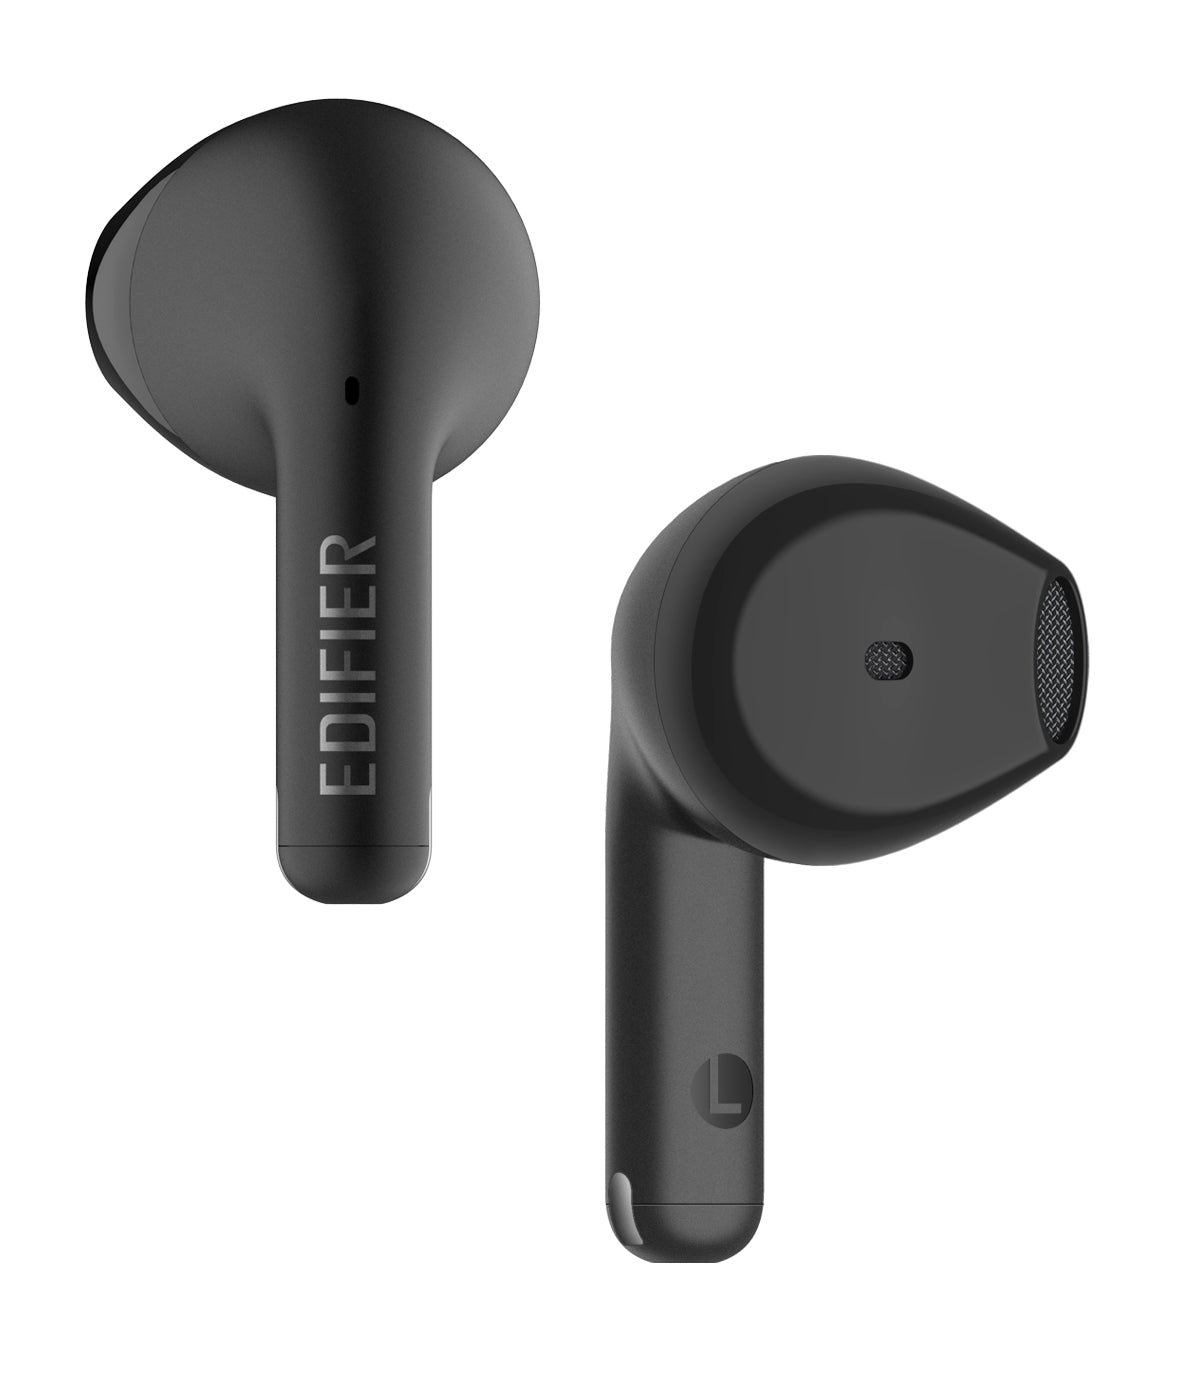 Edifier X2s True Wireless Semi-In-Ear Bluetooth Earbuds With Mic - Black